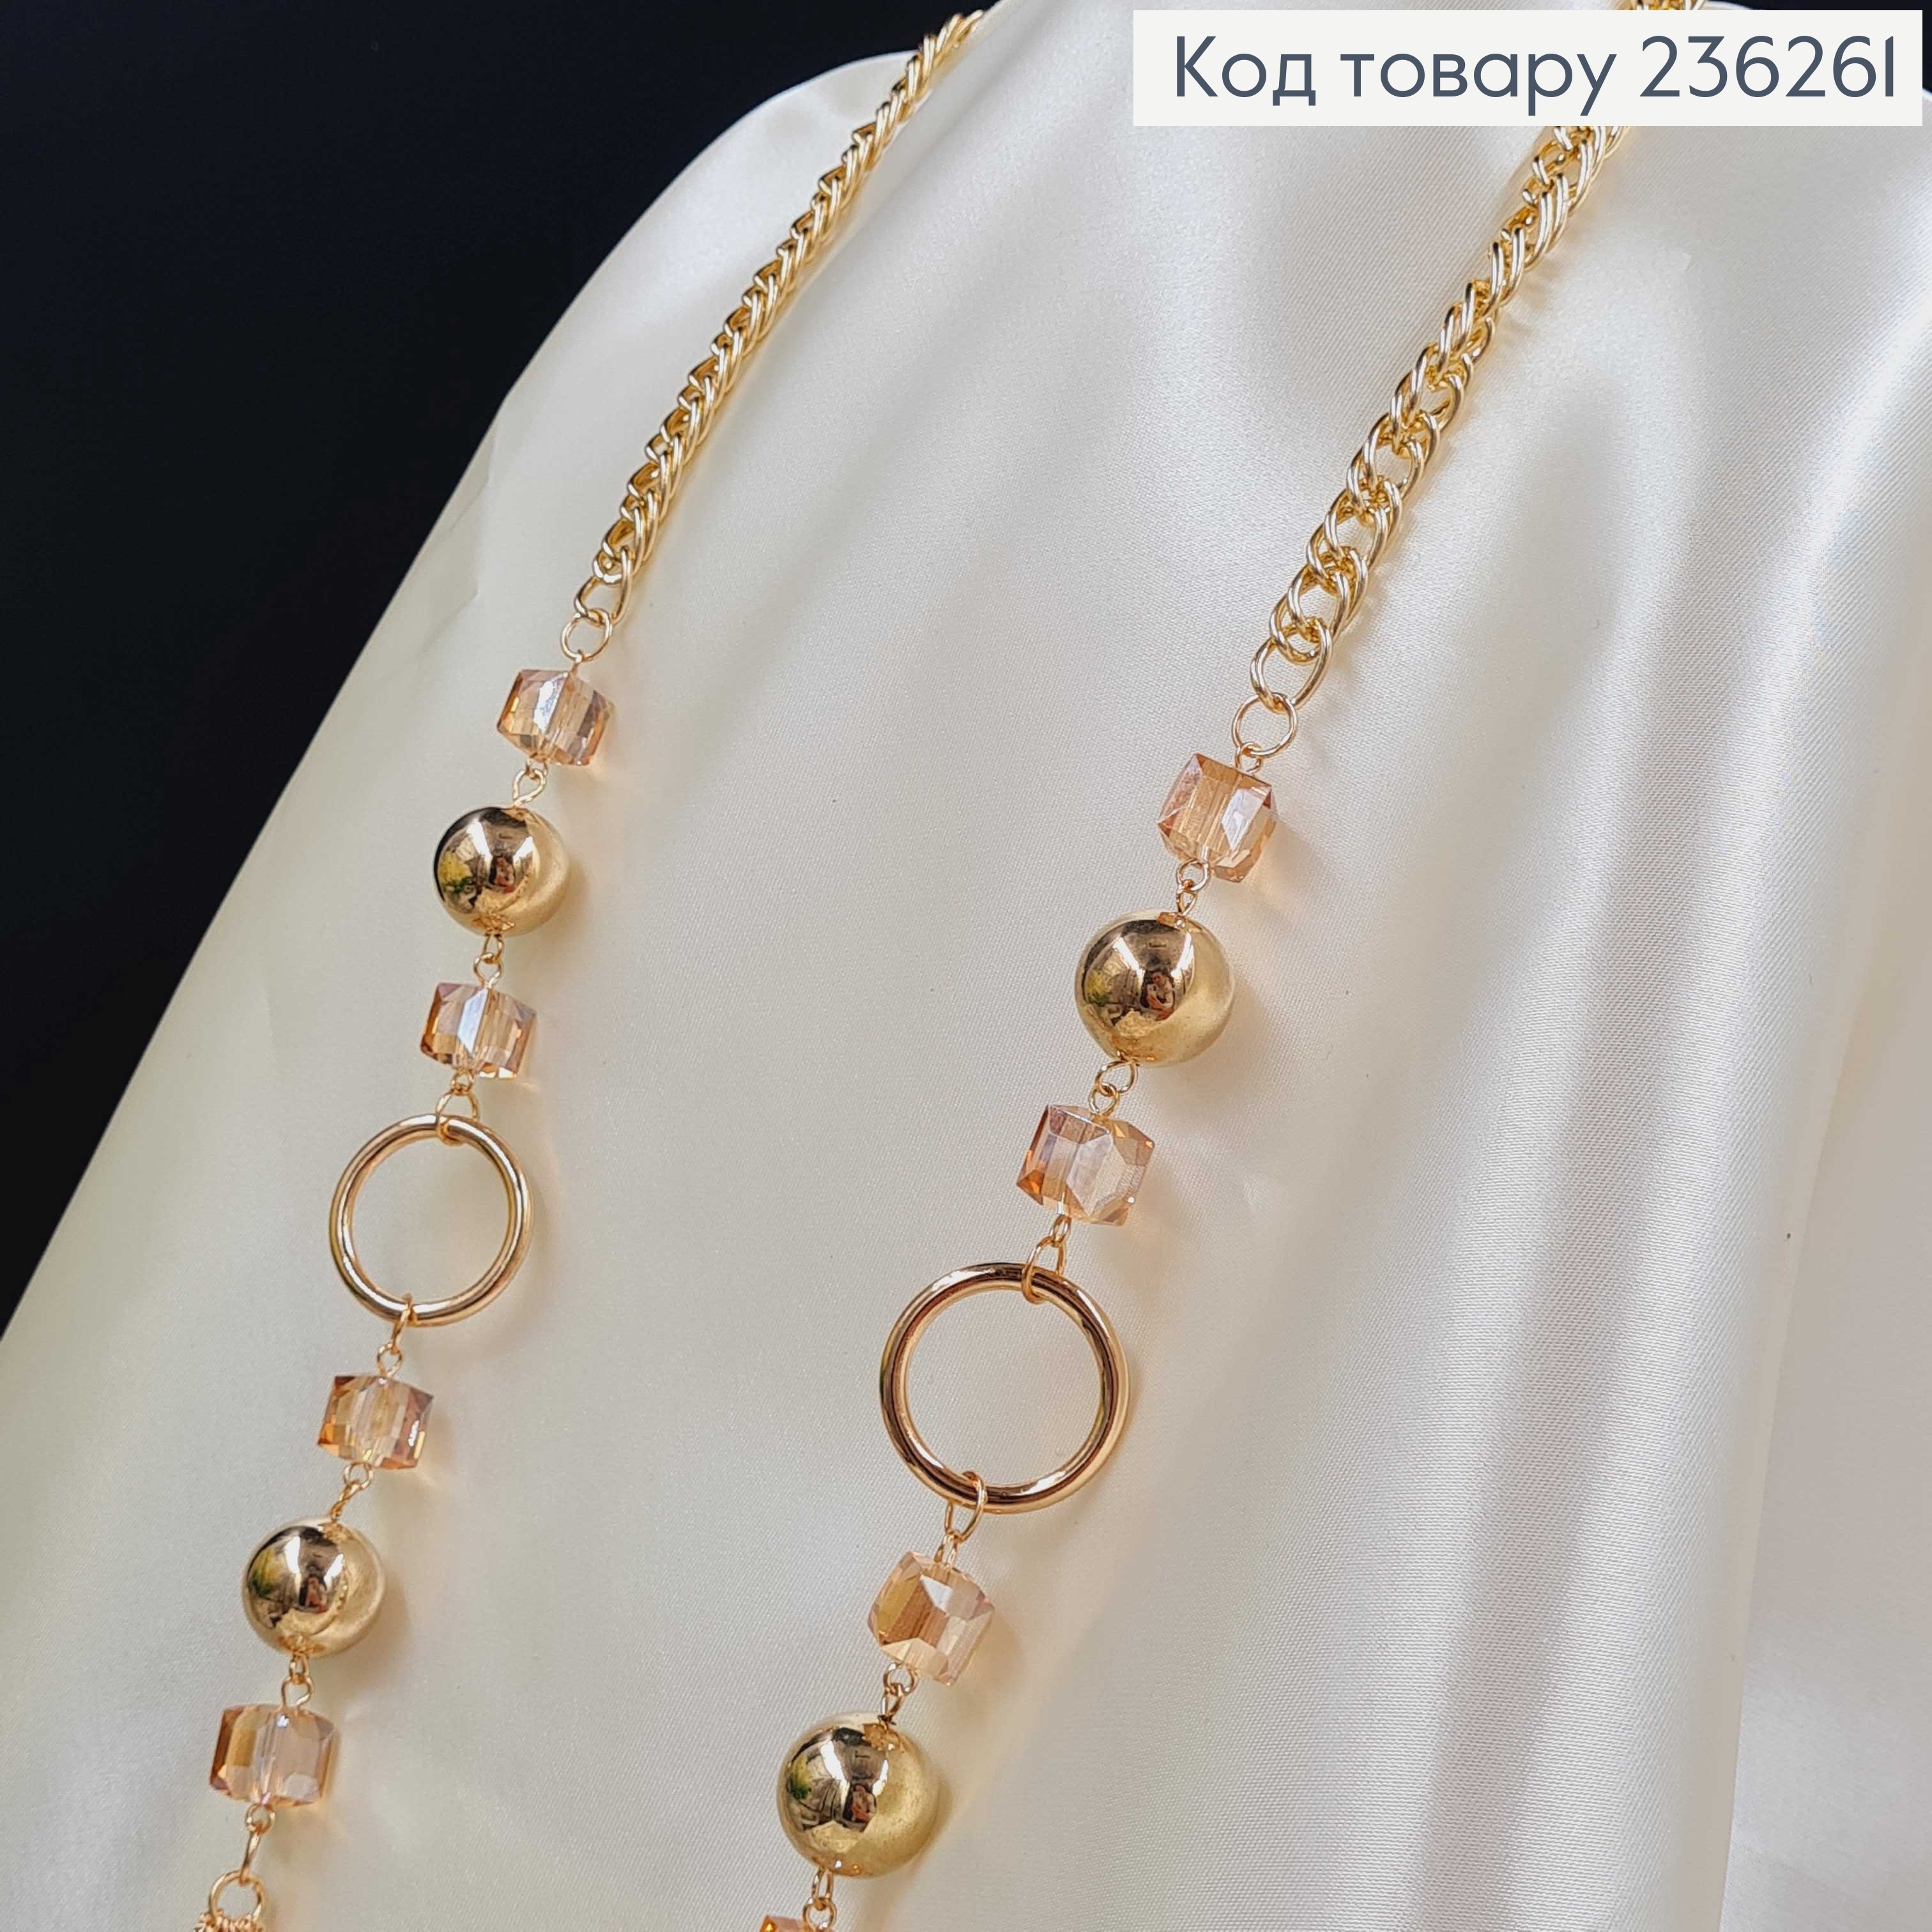 Біжутерія на шию  (80+5см) Золото+Янтарний  Fashion Jewelry 236261 фото 2